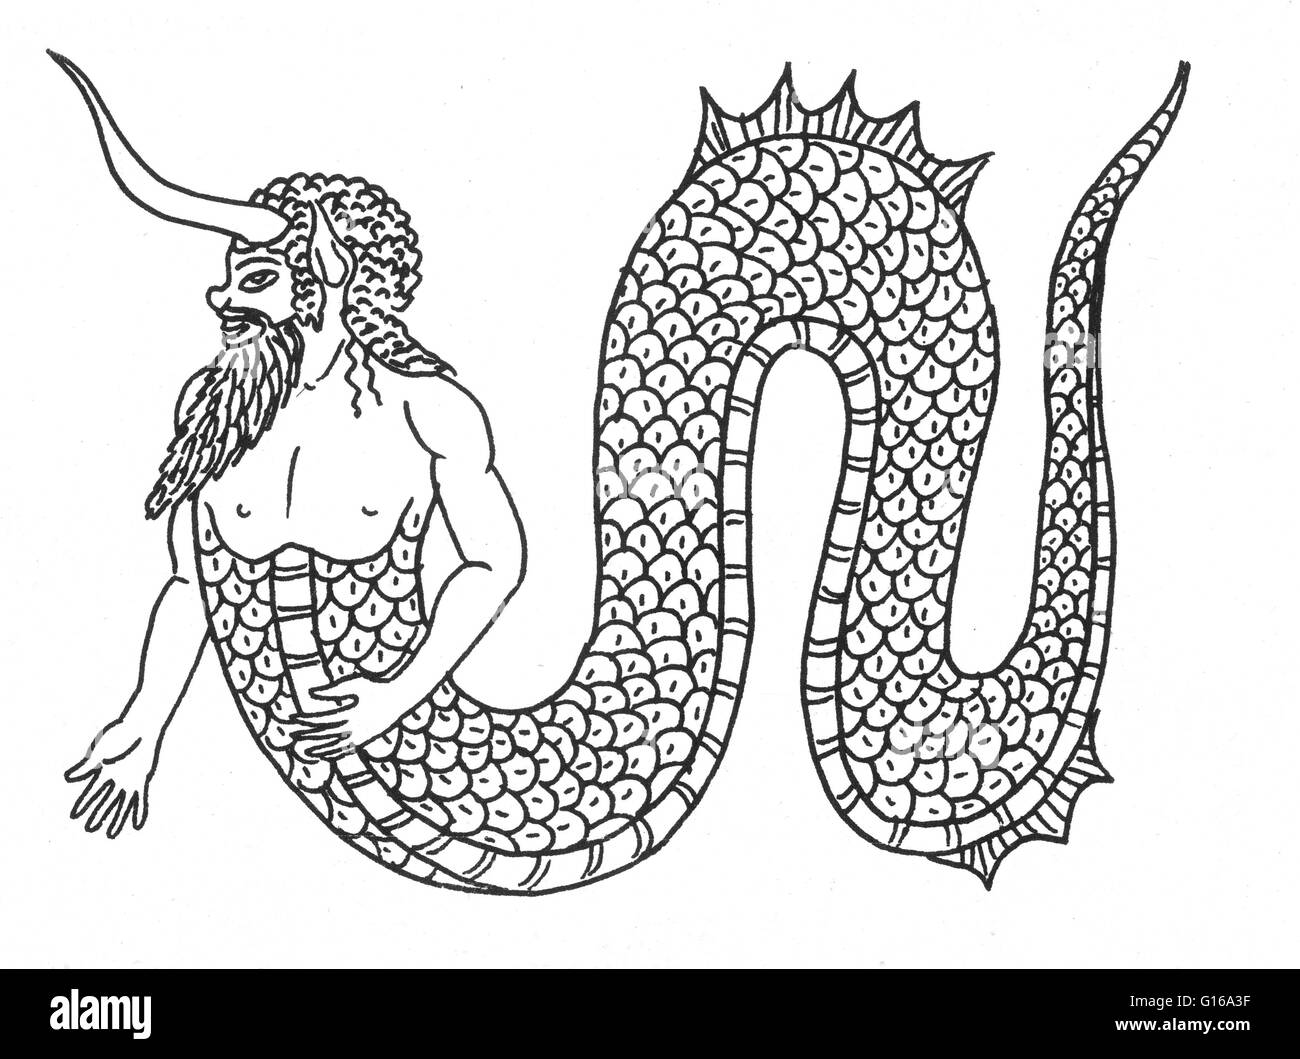 Mermen mythique sont équivalents masculins et des contreparties de sirènes, les créatures légendaires qui ont la forme d'un homme de la taille et sont de poisson à partir de la taille, ayant des queues de poissons à écailles, à la place de jambes. Les actions et le comportement de mermen Banque D'Images